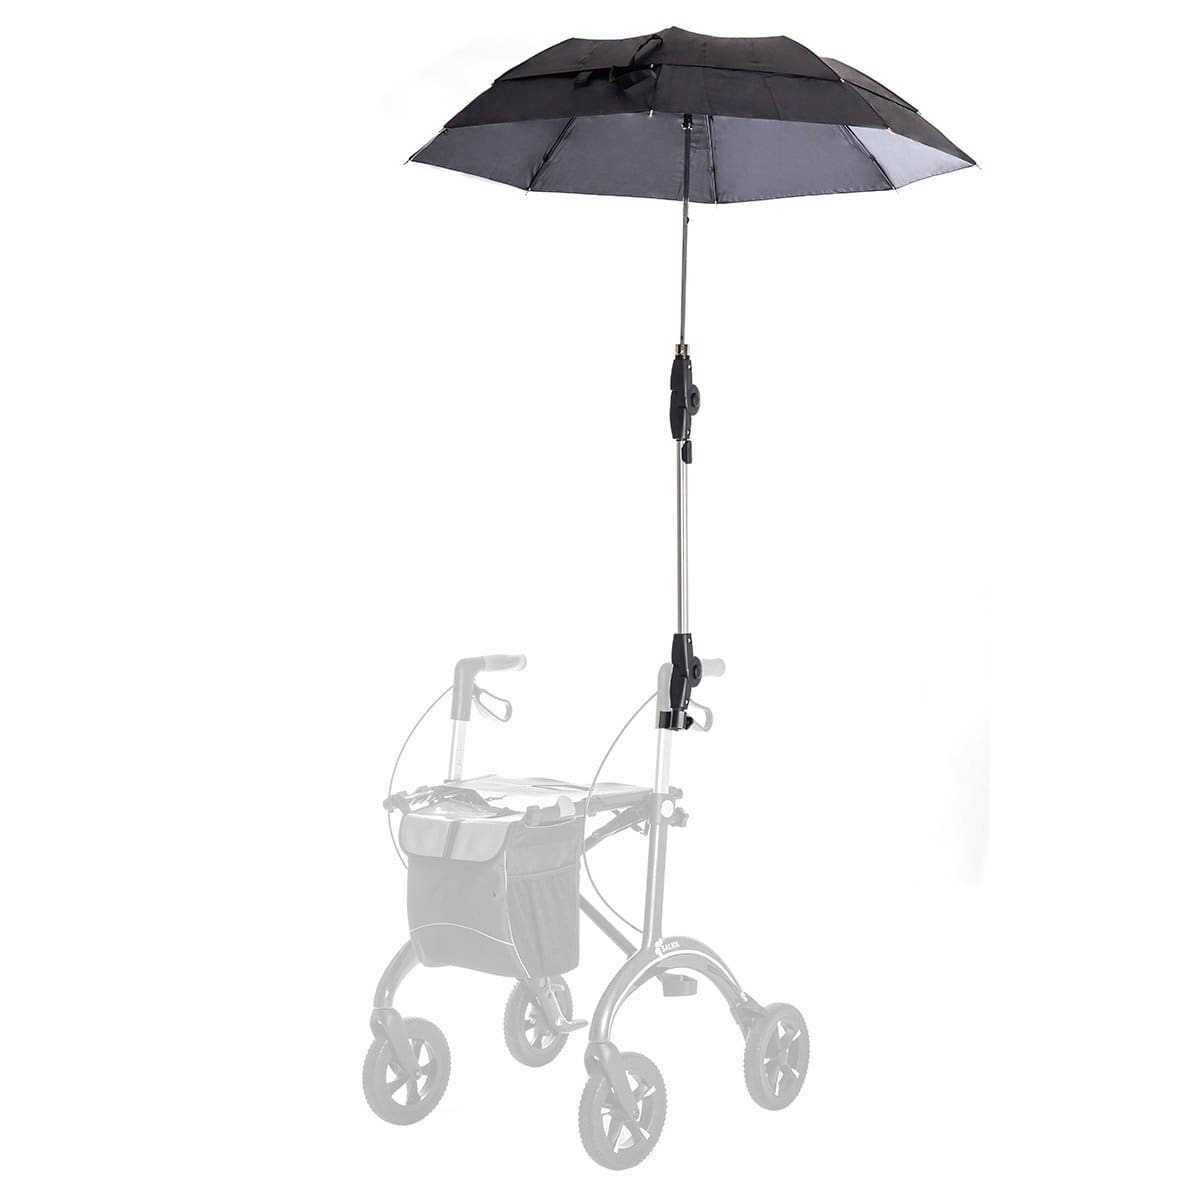 Rollator-Zubehör Saljol Regenschirm für Carbon Rollator Saljol 177977 guenstig online kaufen bei VIDIMA